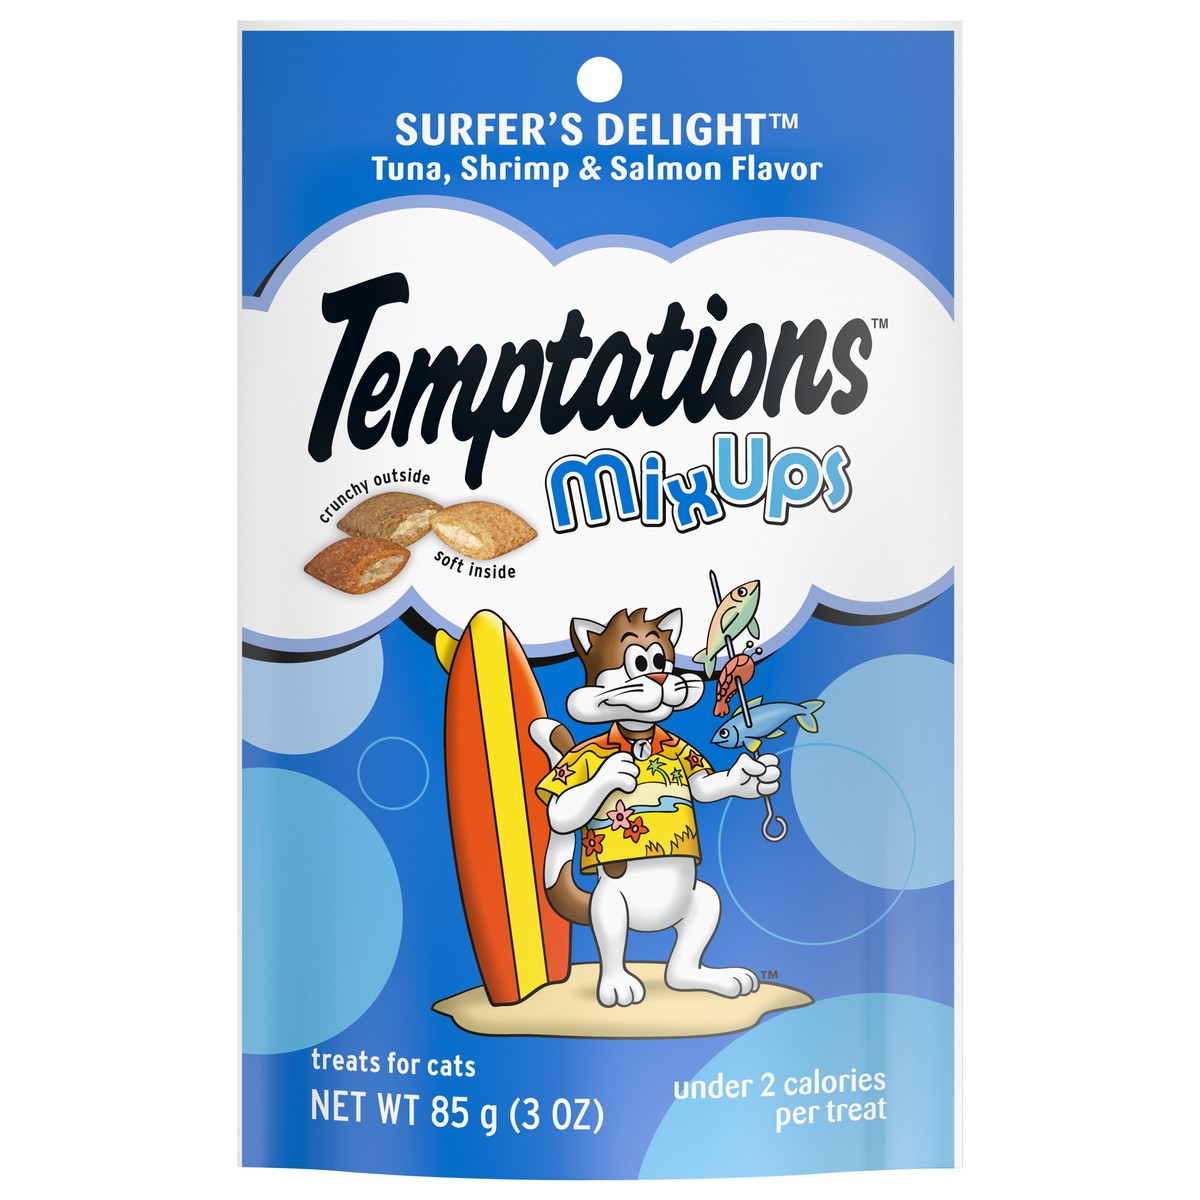 slide 1 of 9, Temptations Surfer's Delight Mix Ups Tuna, Shrimp & Salmon Flavor Cat Treats 3 oz, 3 oz